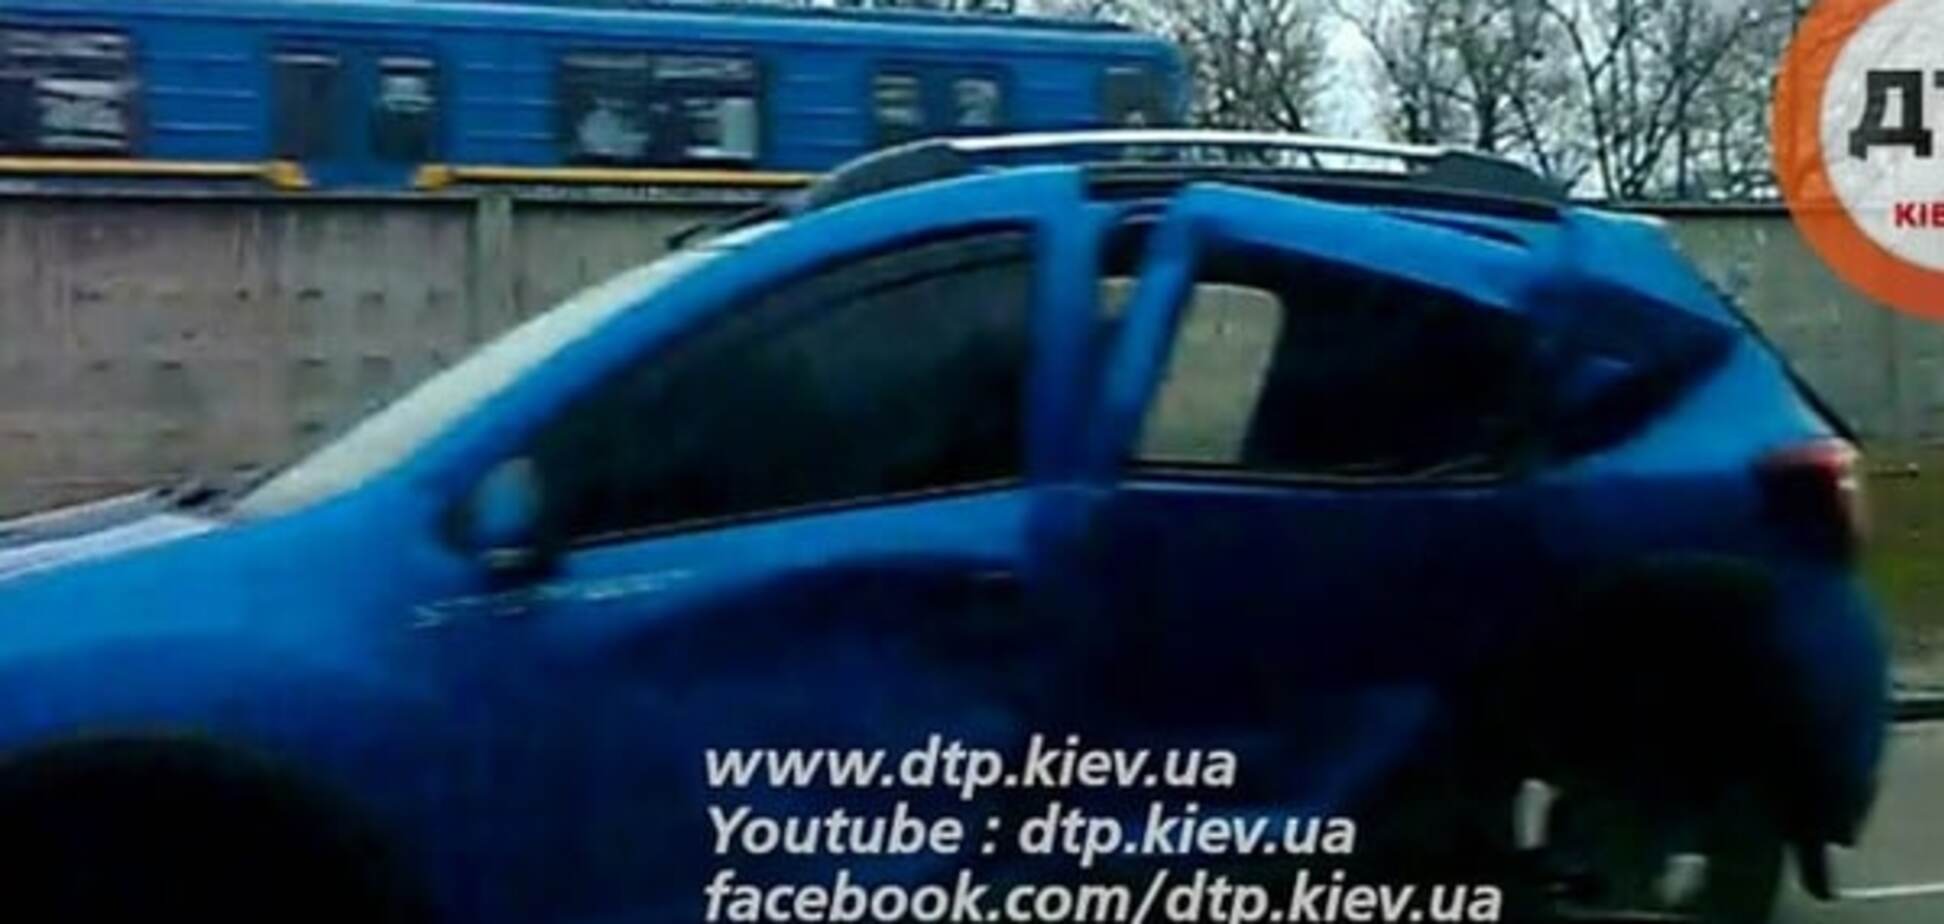 В Киеве на проспекте столкнулись автомобили, есть пострадавшие